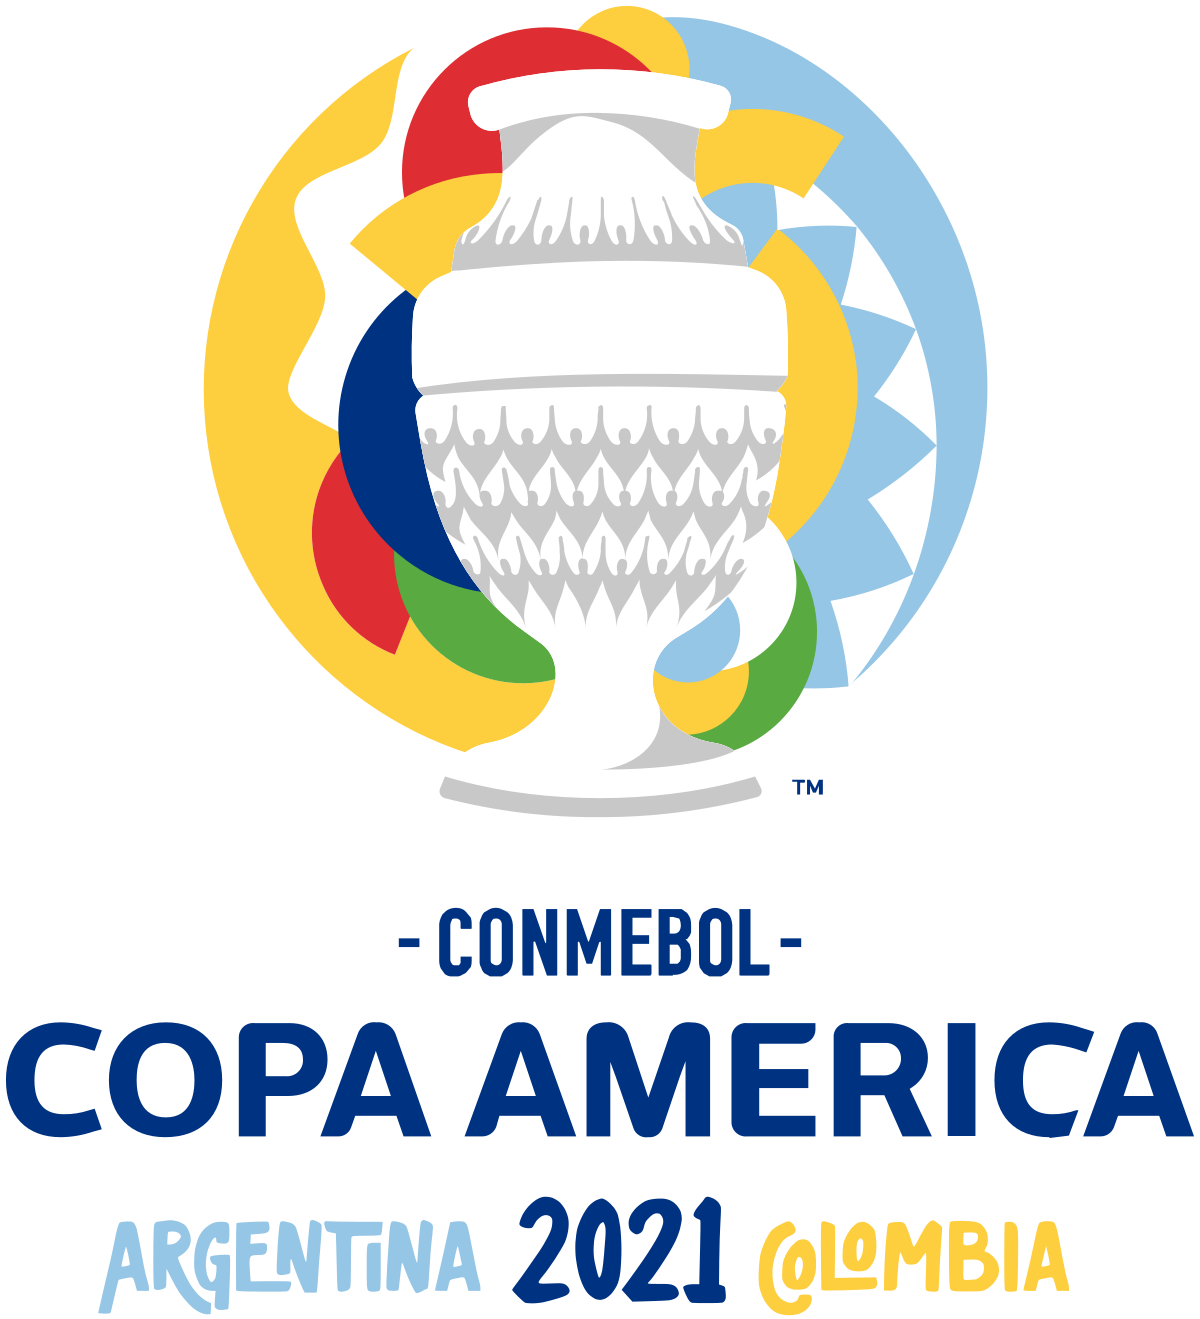 Copa America 2020 sẽ trở lại vào tháng 6 tới đây